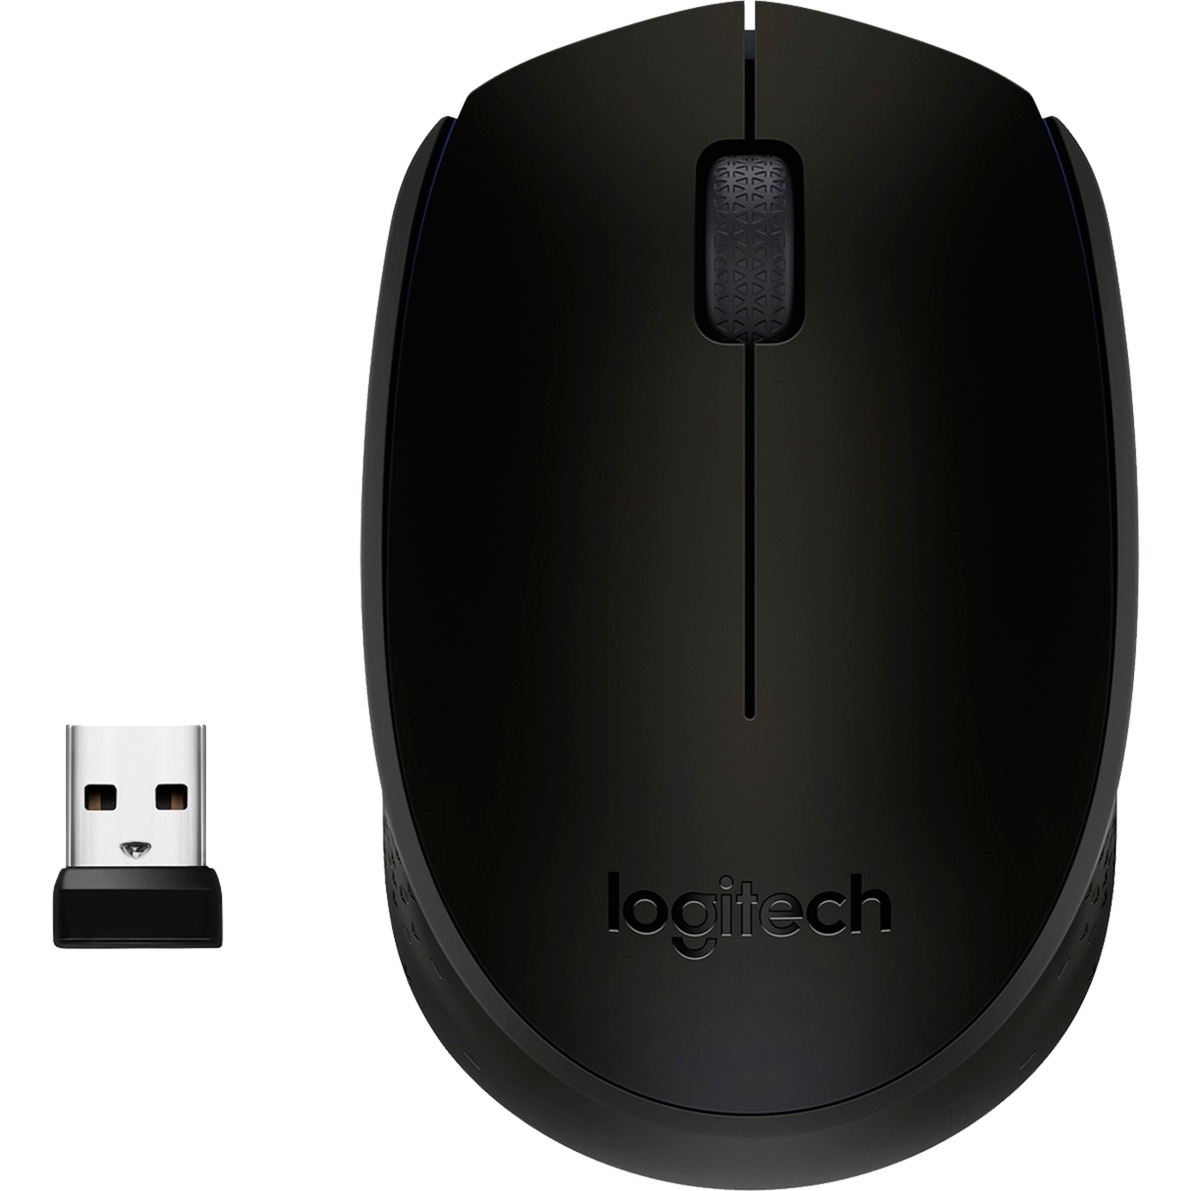 Image of Alternate - B170 Wireless Mouse, Maus online einkaufen bei Alternate